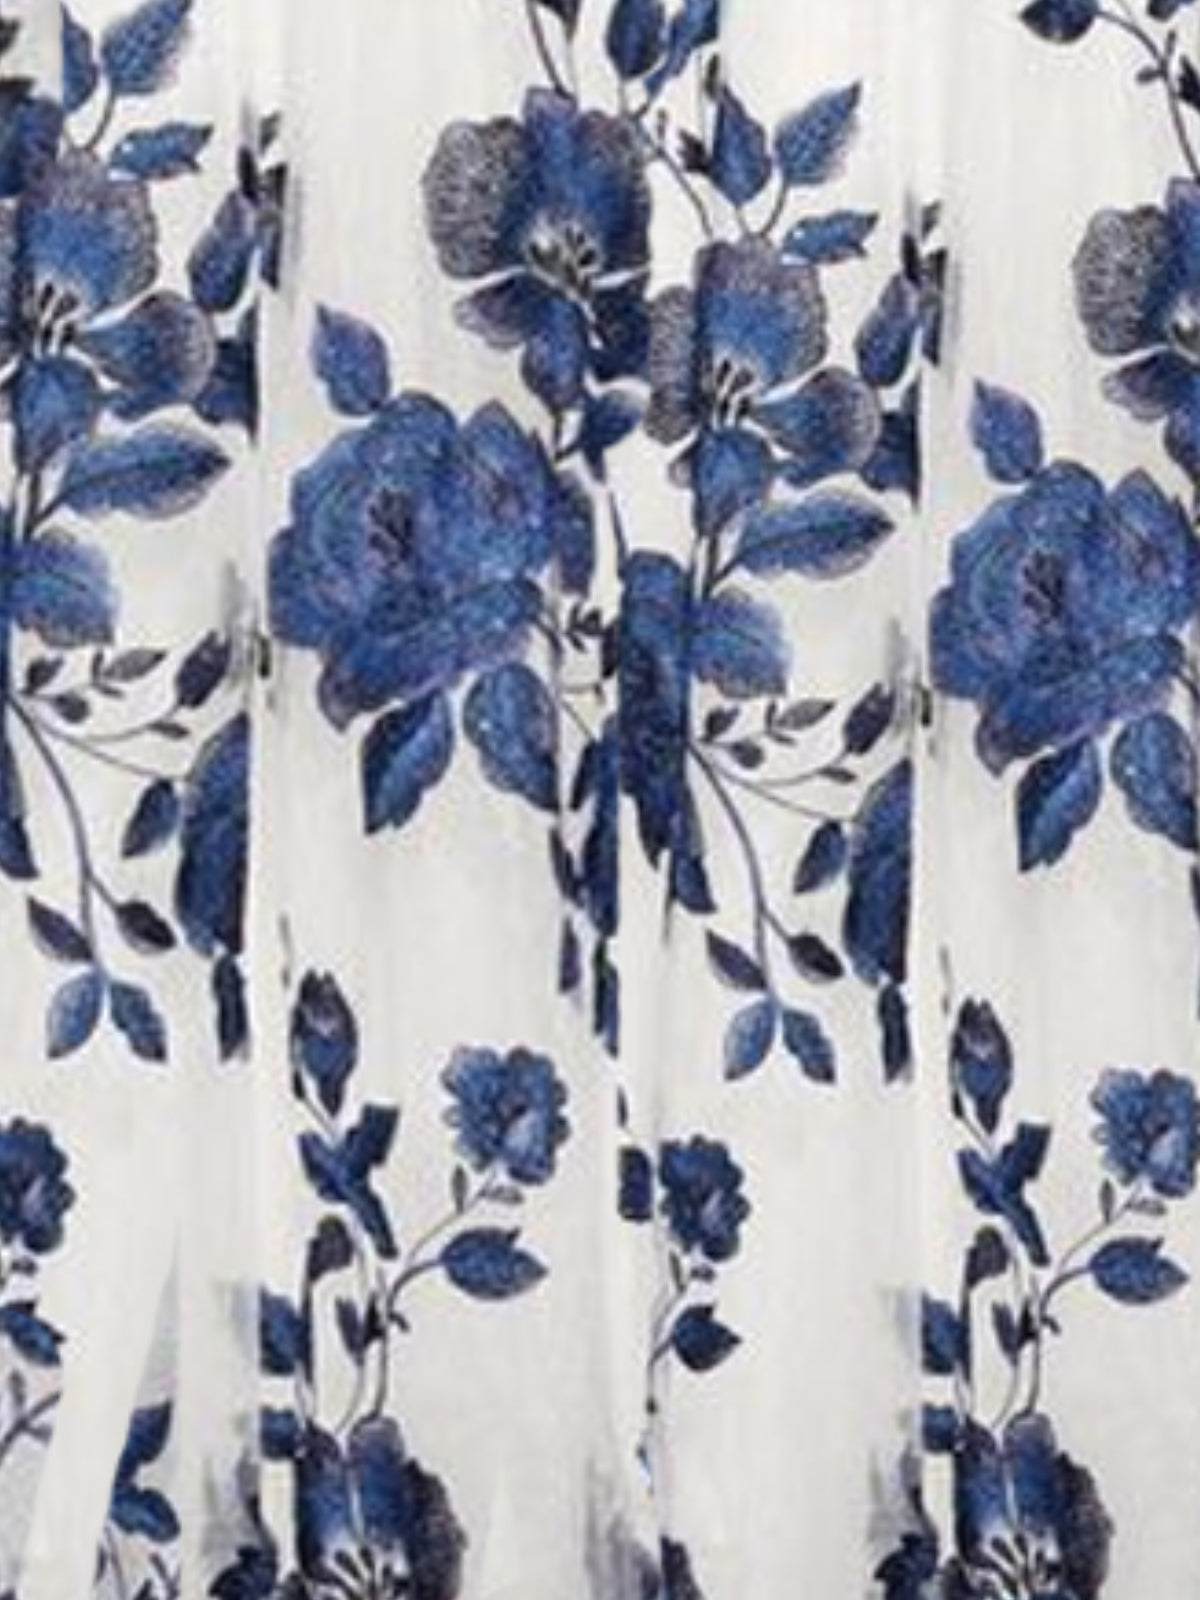 Women Blue Color Half Sleeve V-neck Floral Printed Top Dress